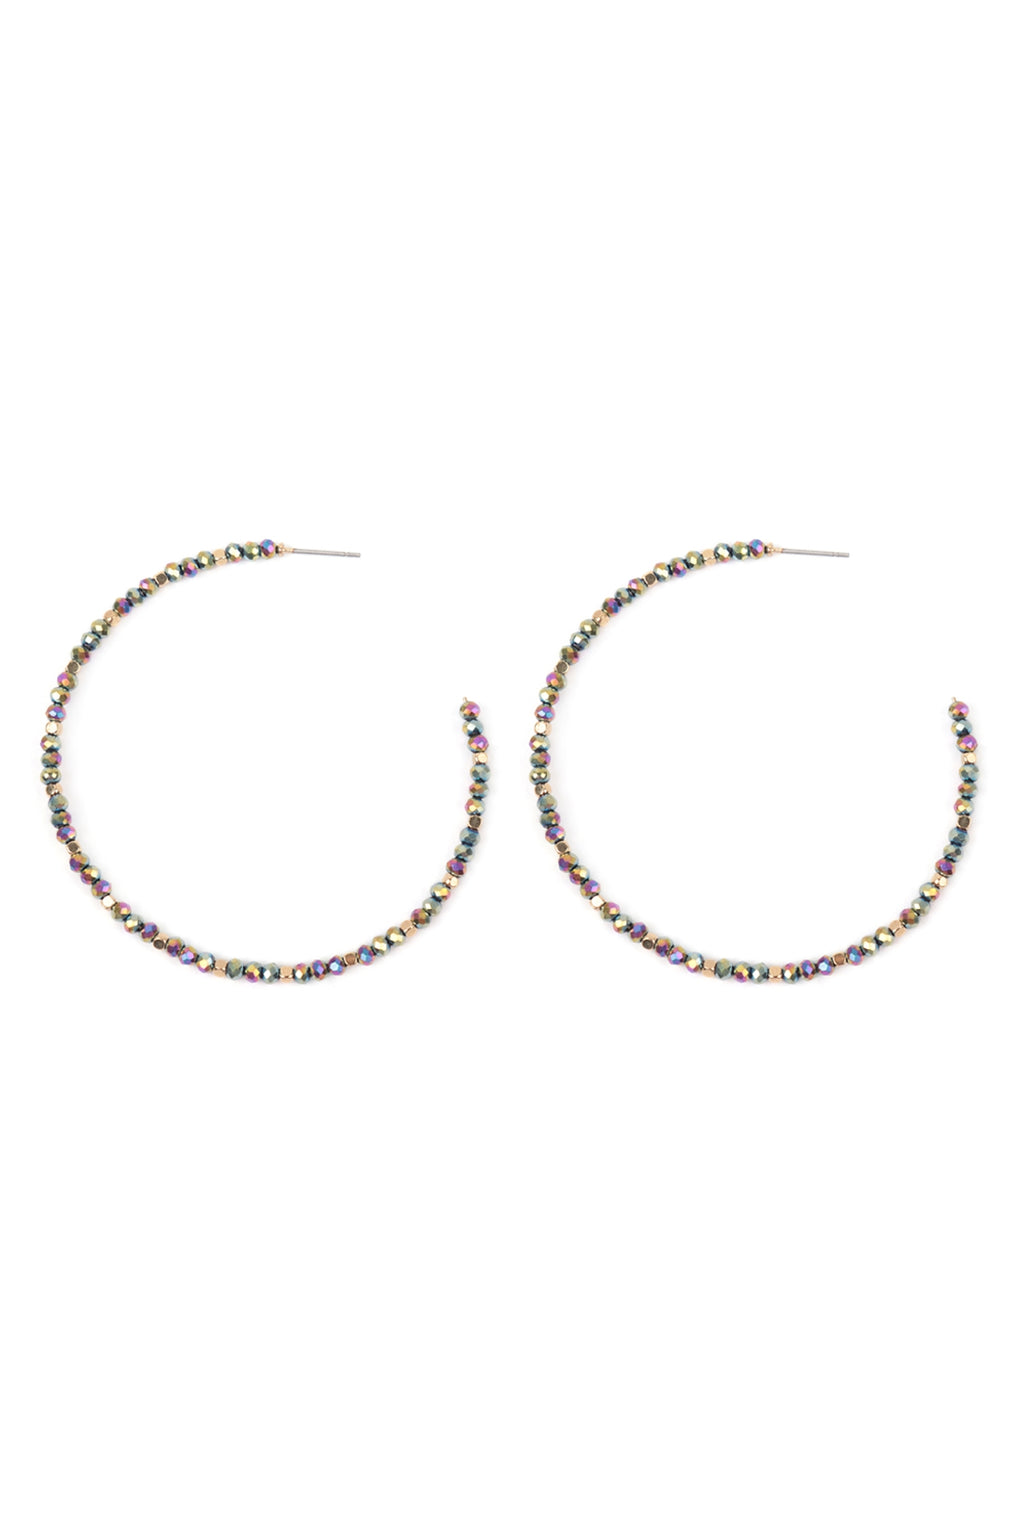 Rondelle Beads Hoop Earrings Hematite AB - Pack of 6